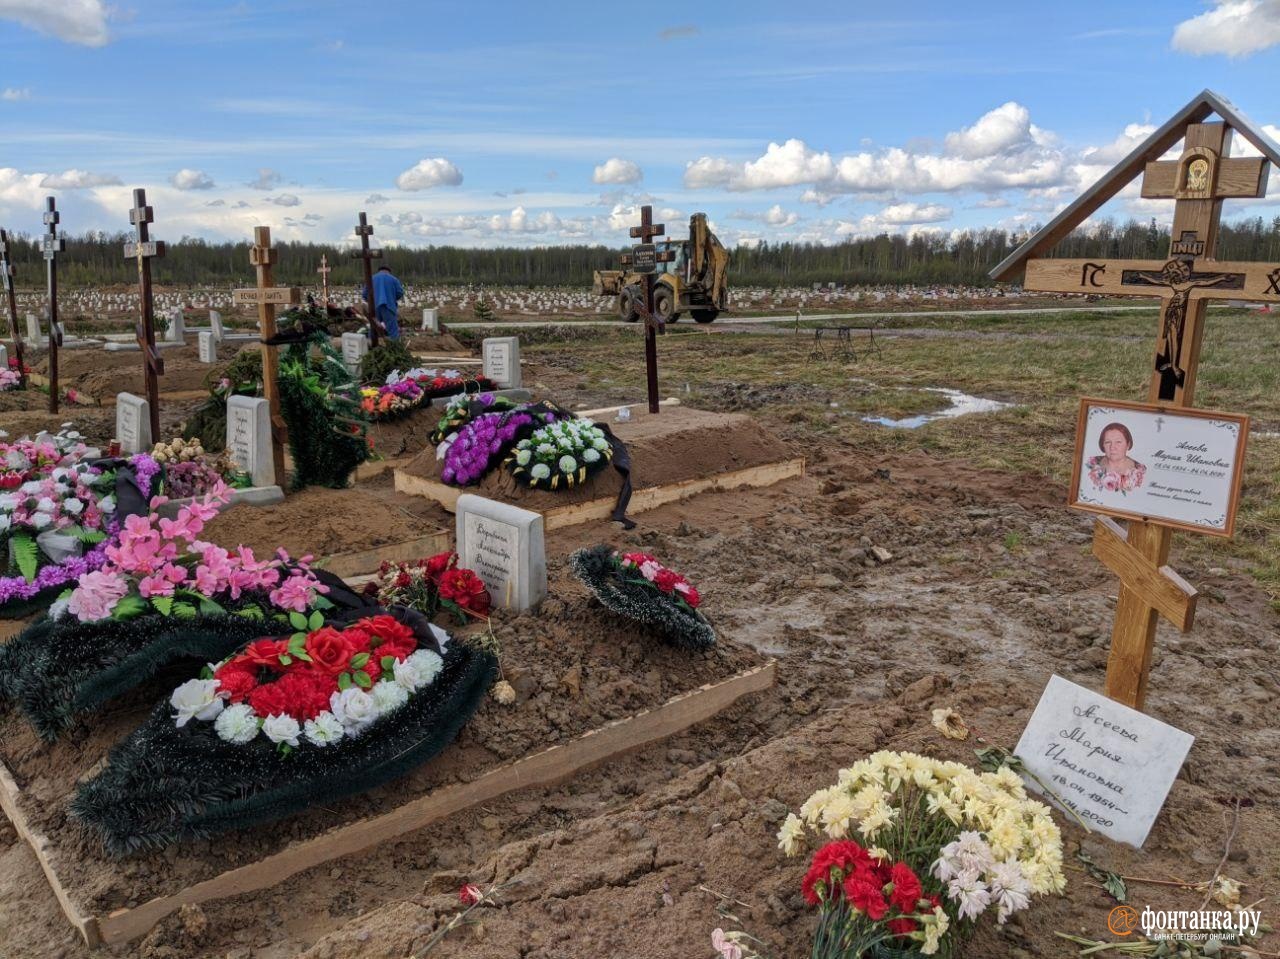 Новое кладбище в Колпино, май 2020 года<br><br>автор фото Павел Каравашкин / «Фонтанка.ру»